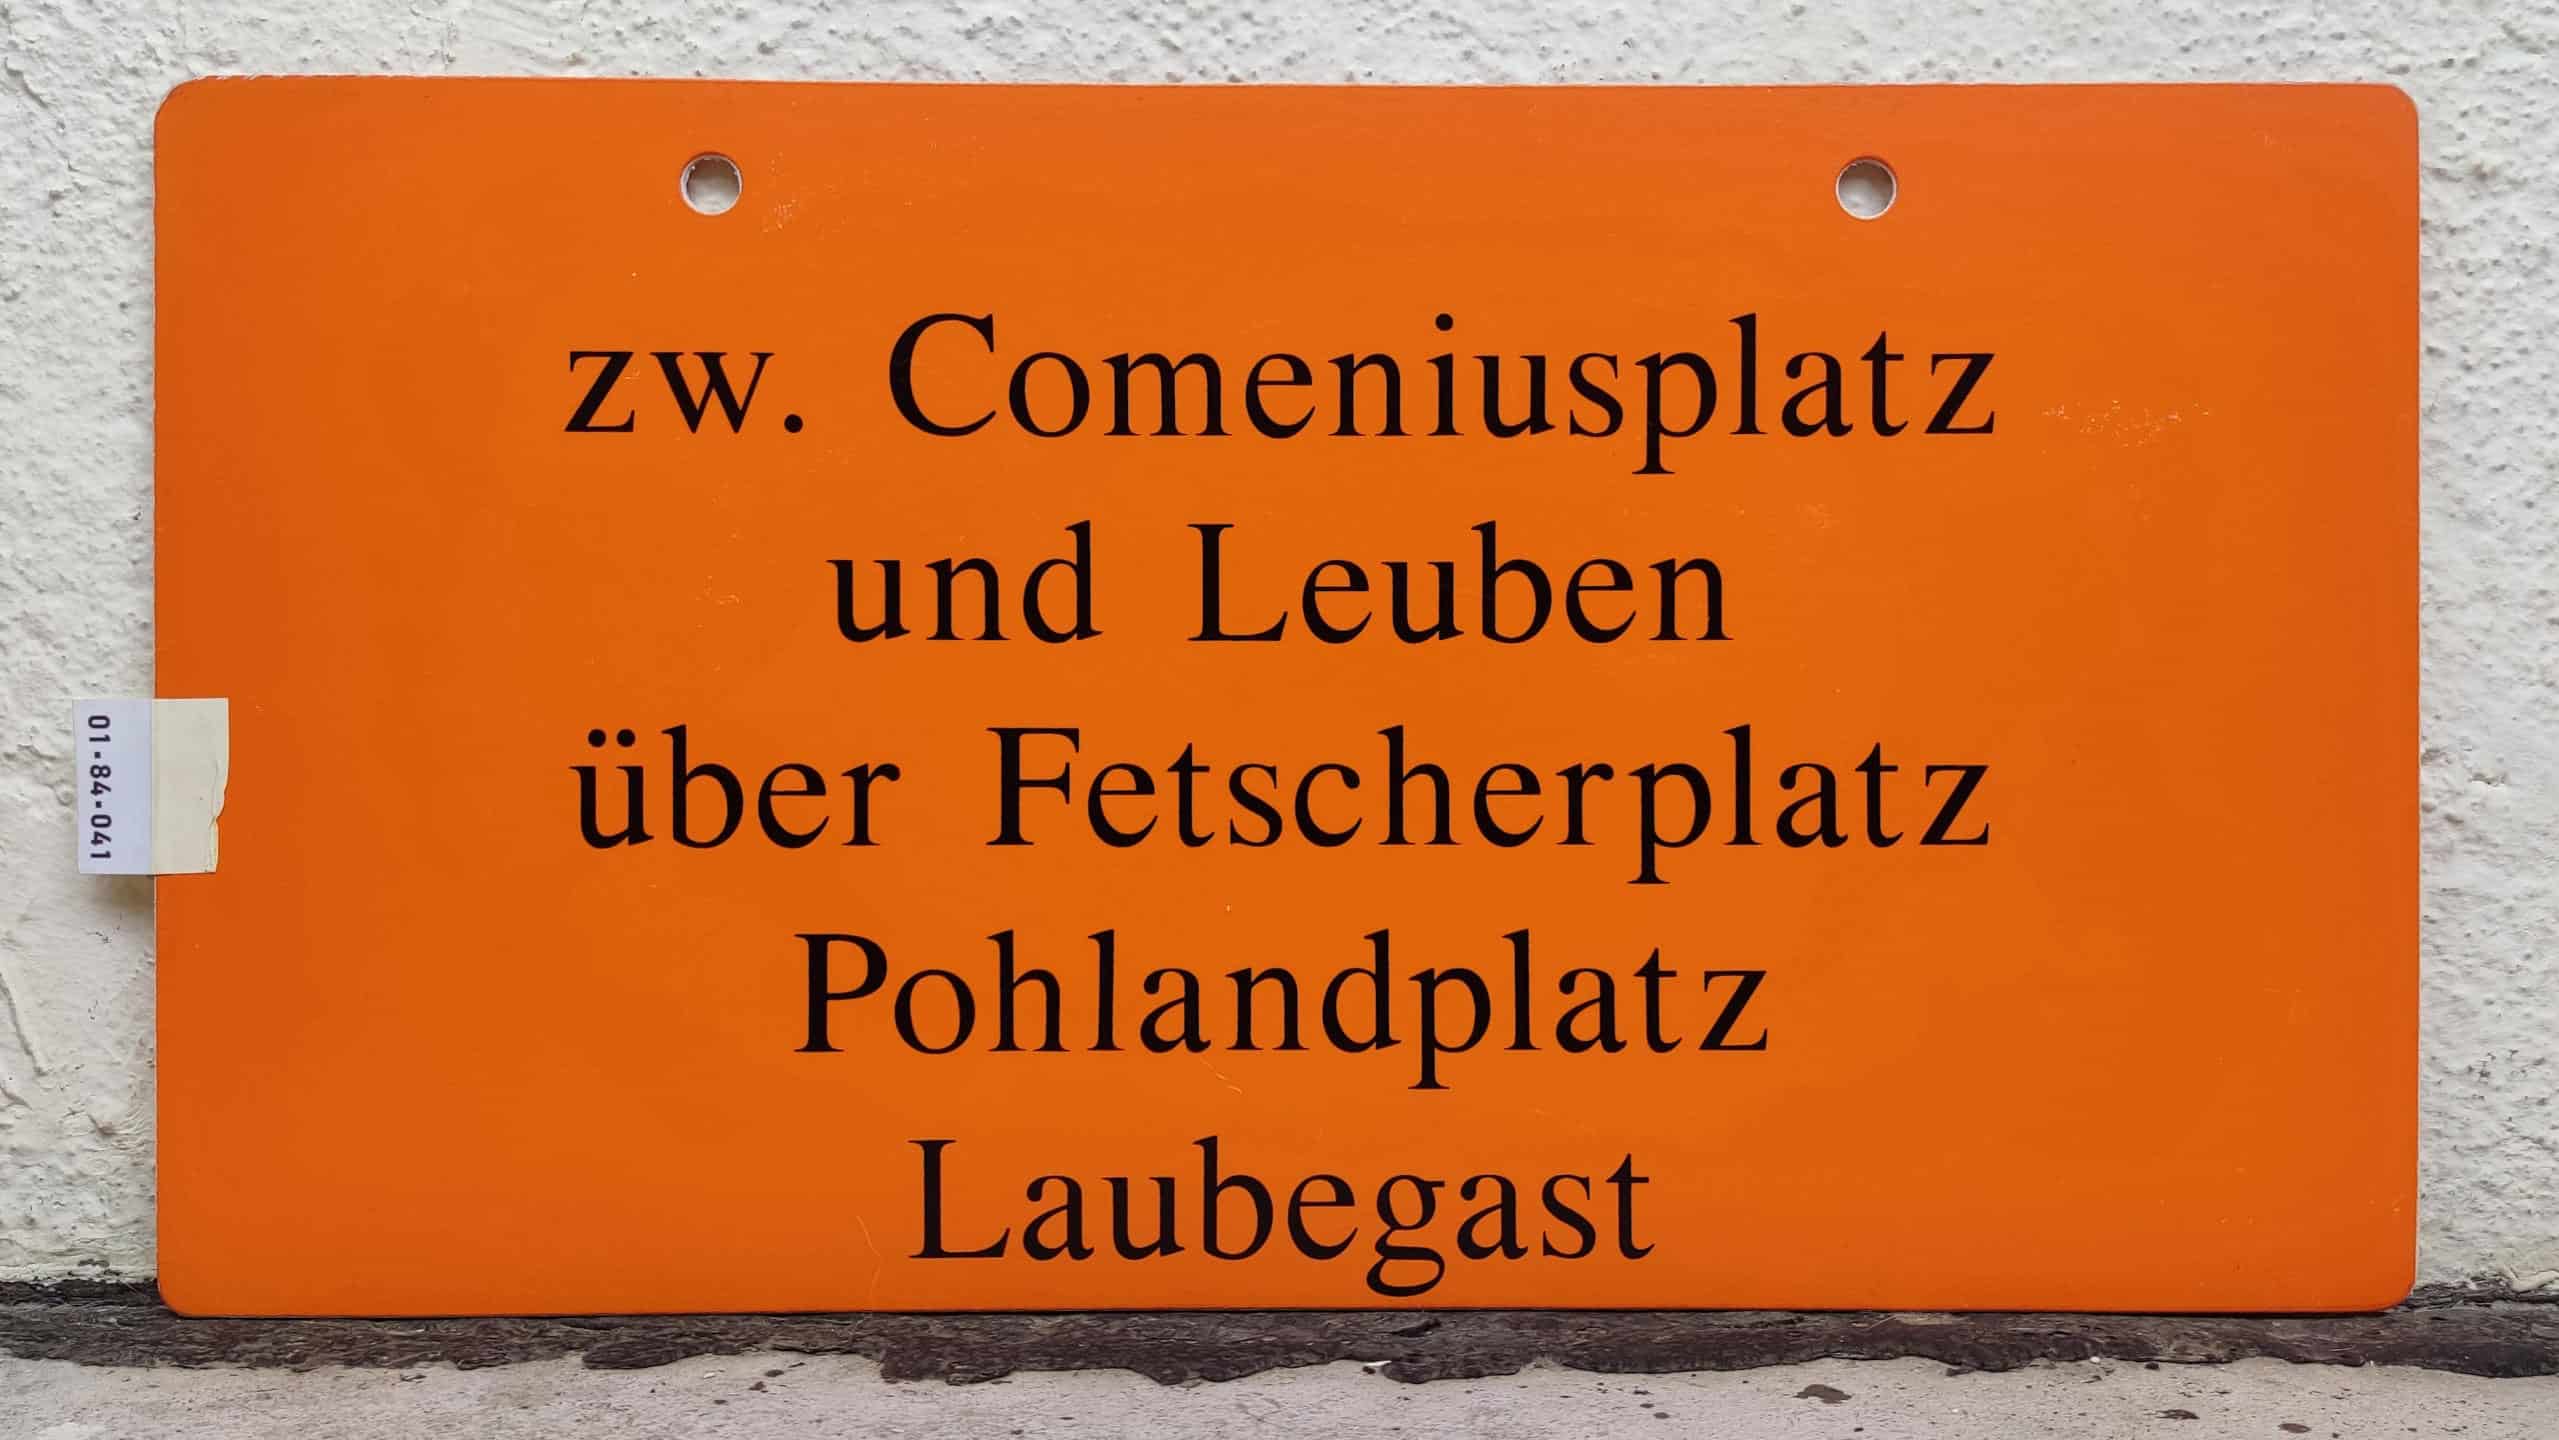 zw. Comeniusplatz und Leuben über Fetscherplatz Pohlandplatz Laubegast